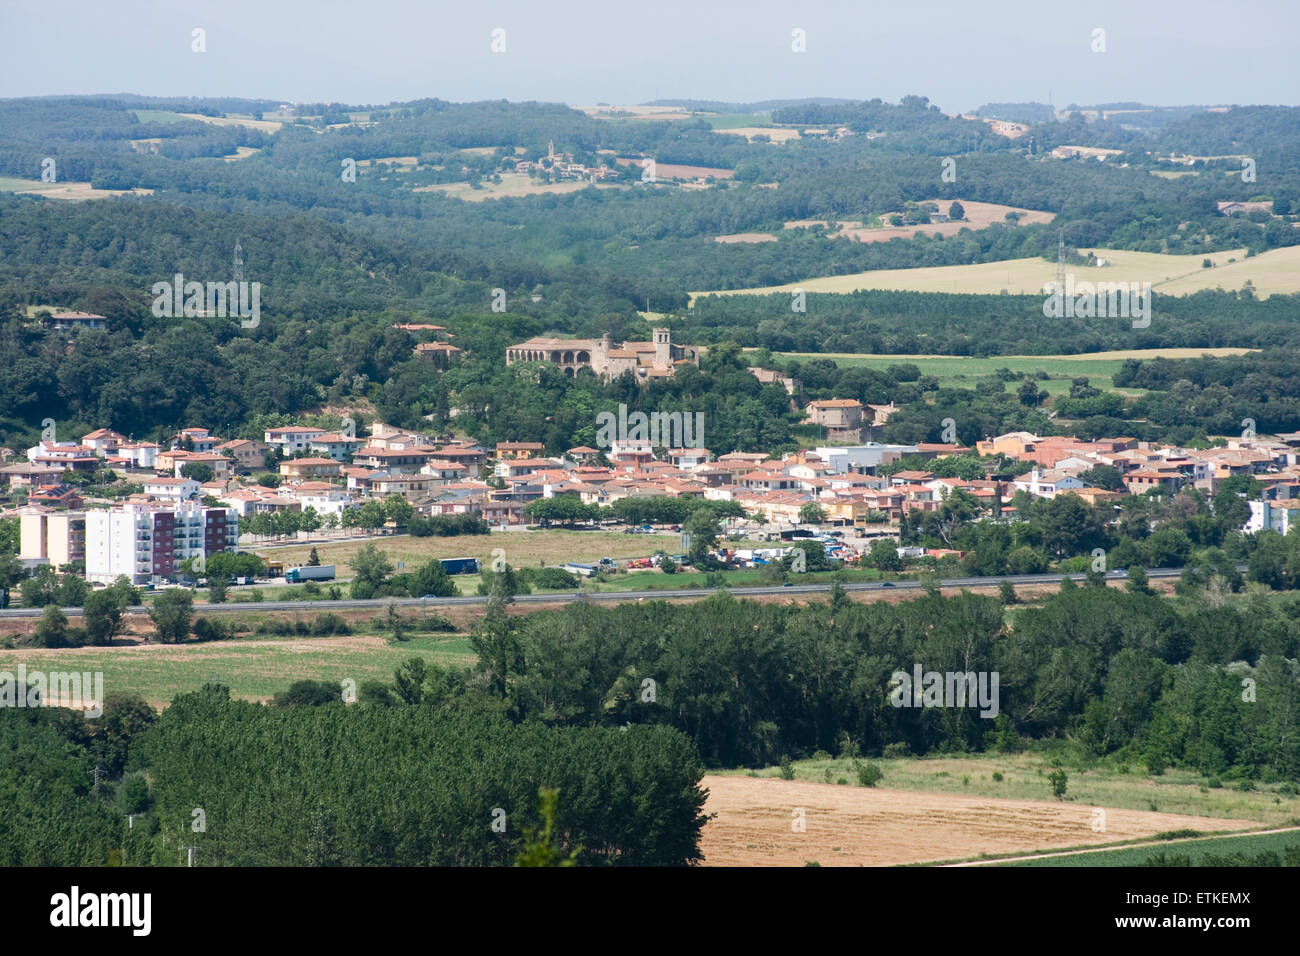 Overview of Medinyà. Sant Julià de Ramis. Stock Photo